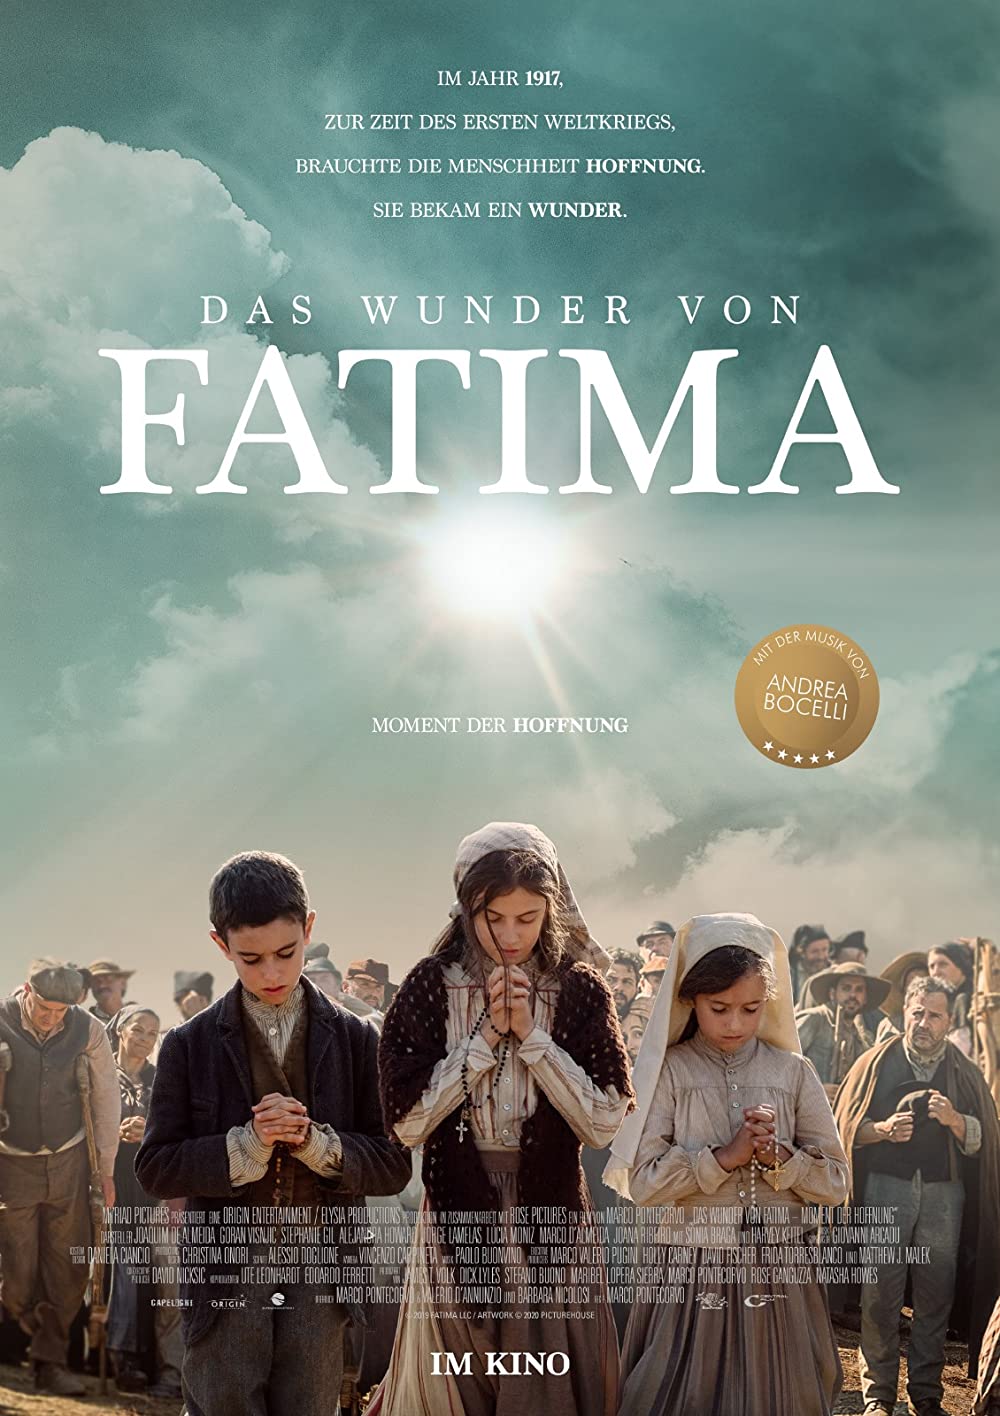 Filmbeschreibung zu Fatima